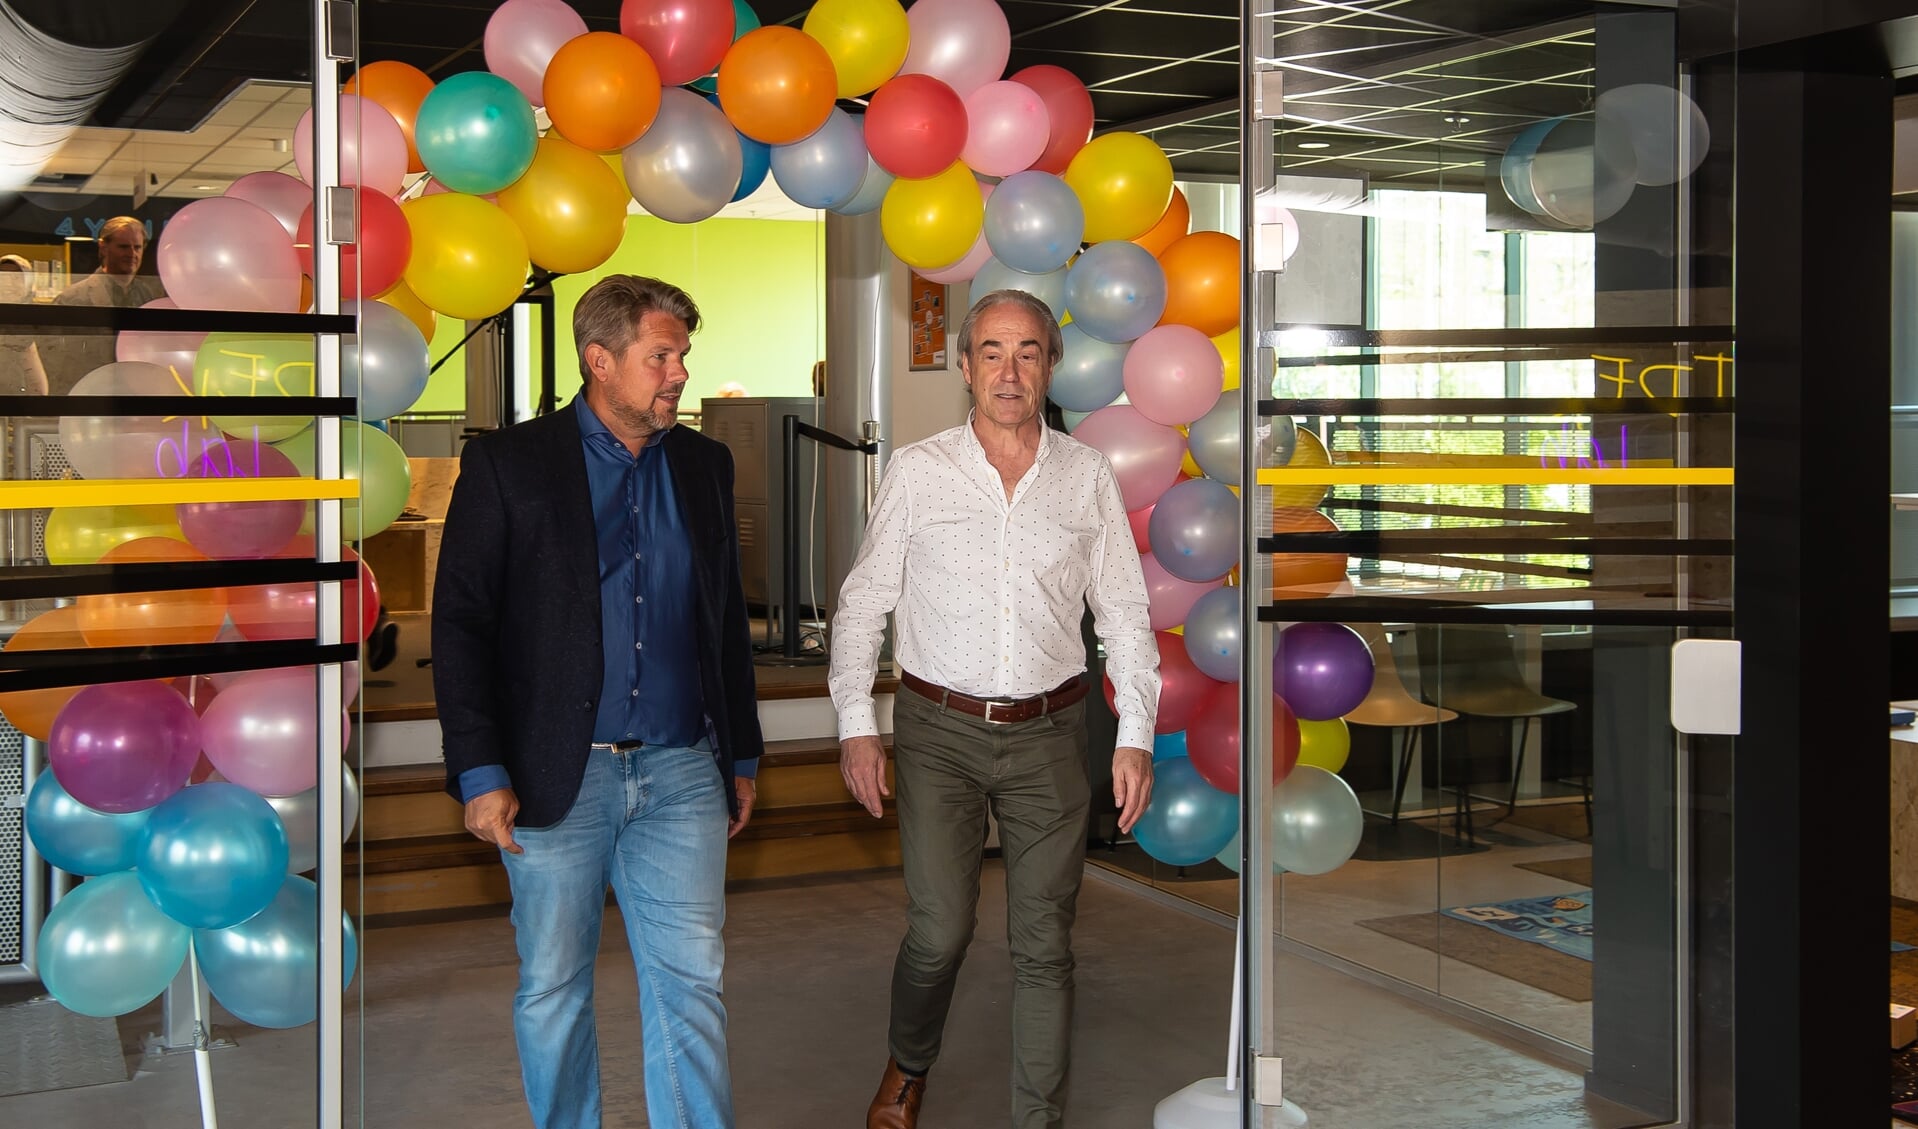 Wethouder Pascal Verkroost en de directeur van de bibliotheek Norbert van Halderen verrichtten samen de opening. 